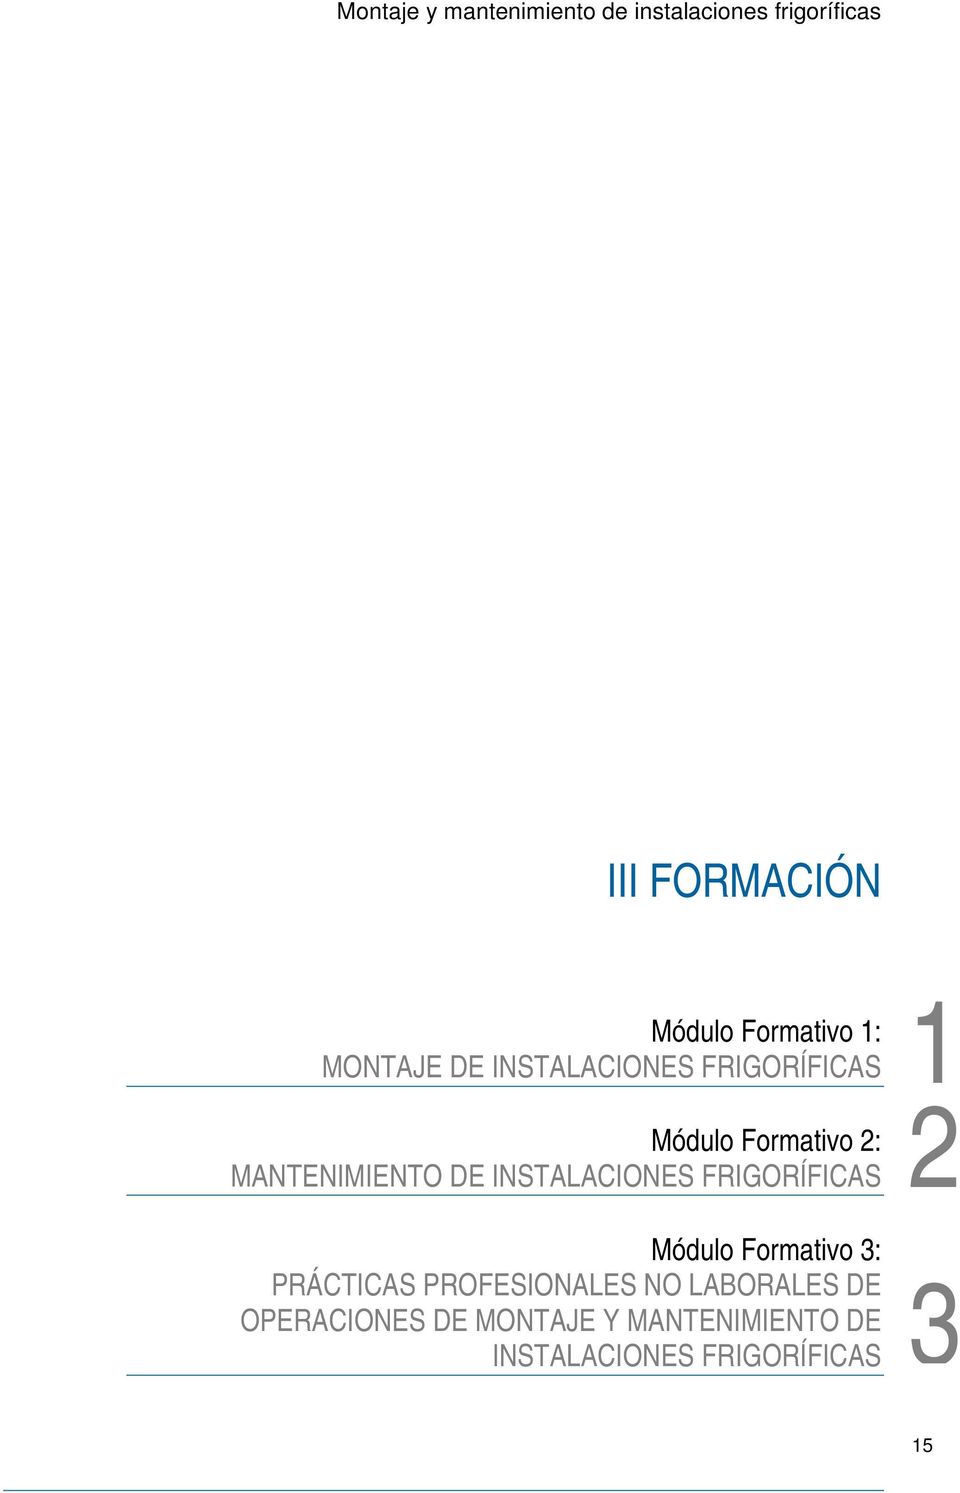 MANTENIMIENTO DE INSTALACIONES FRIGORÍFICAS Módulo Formativo 3: PRÁCTICAS